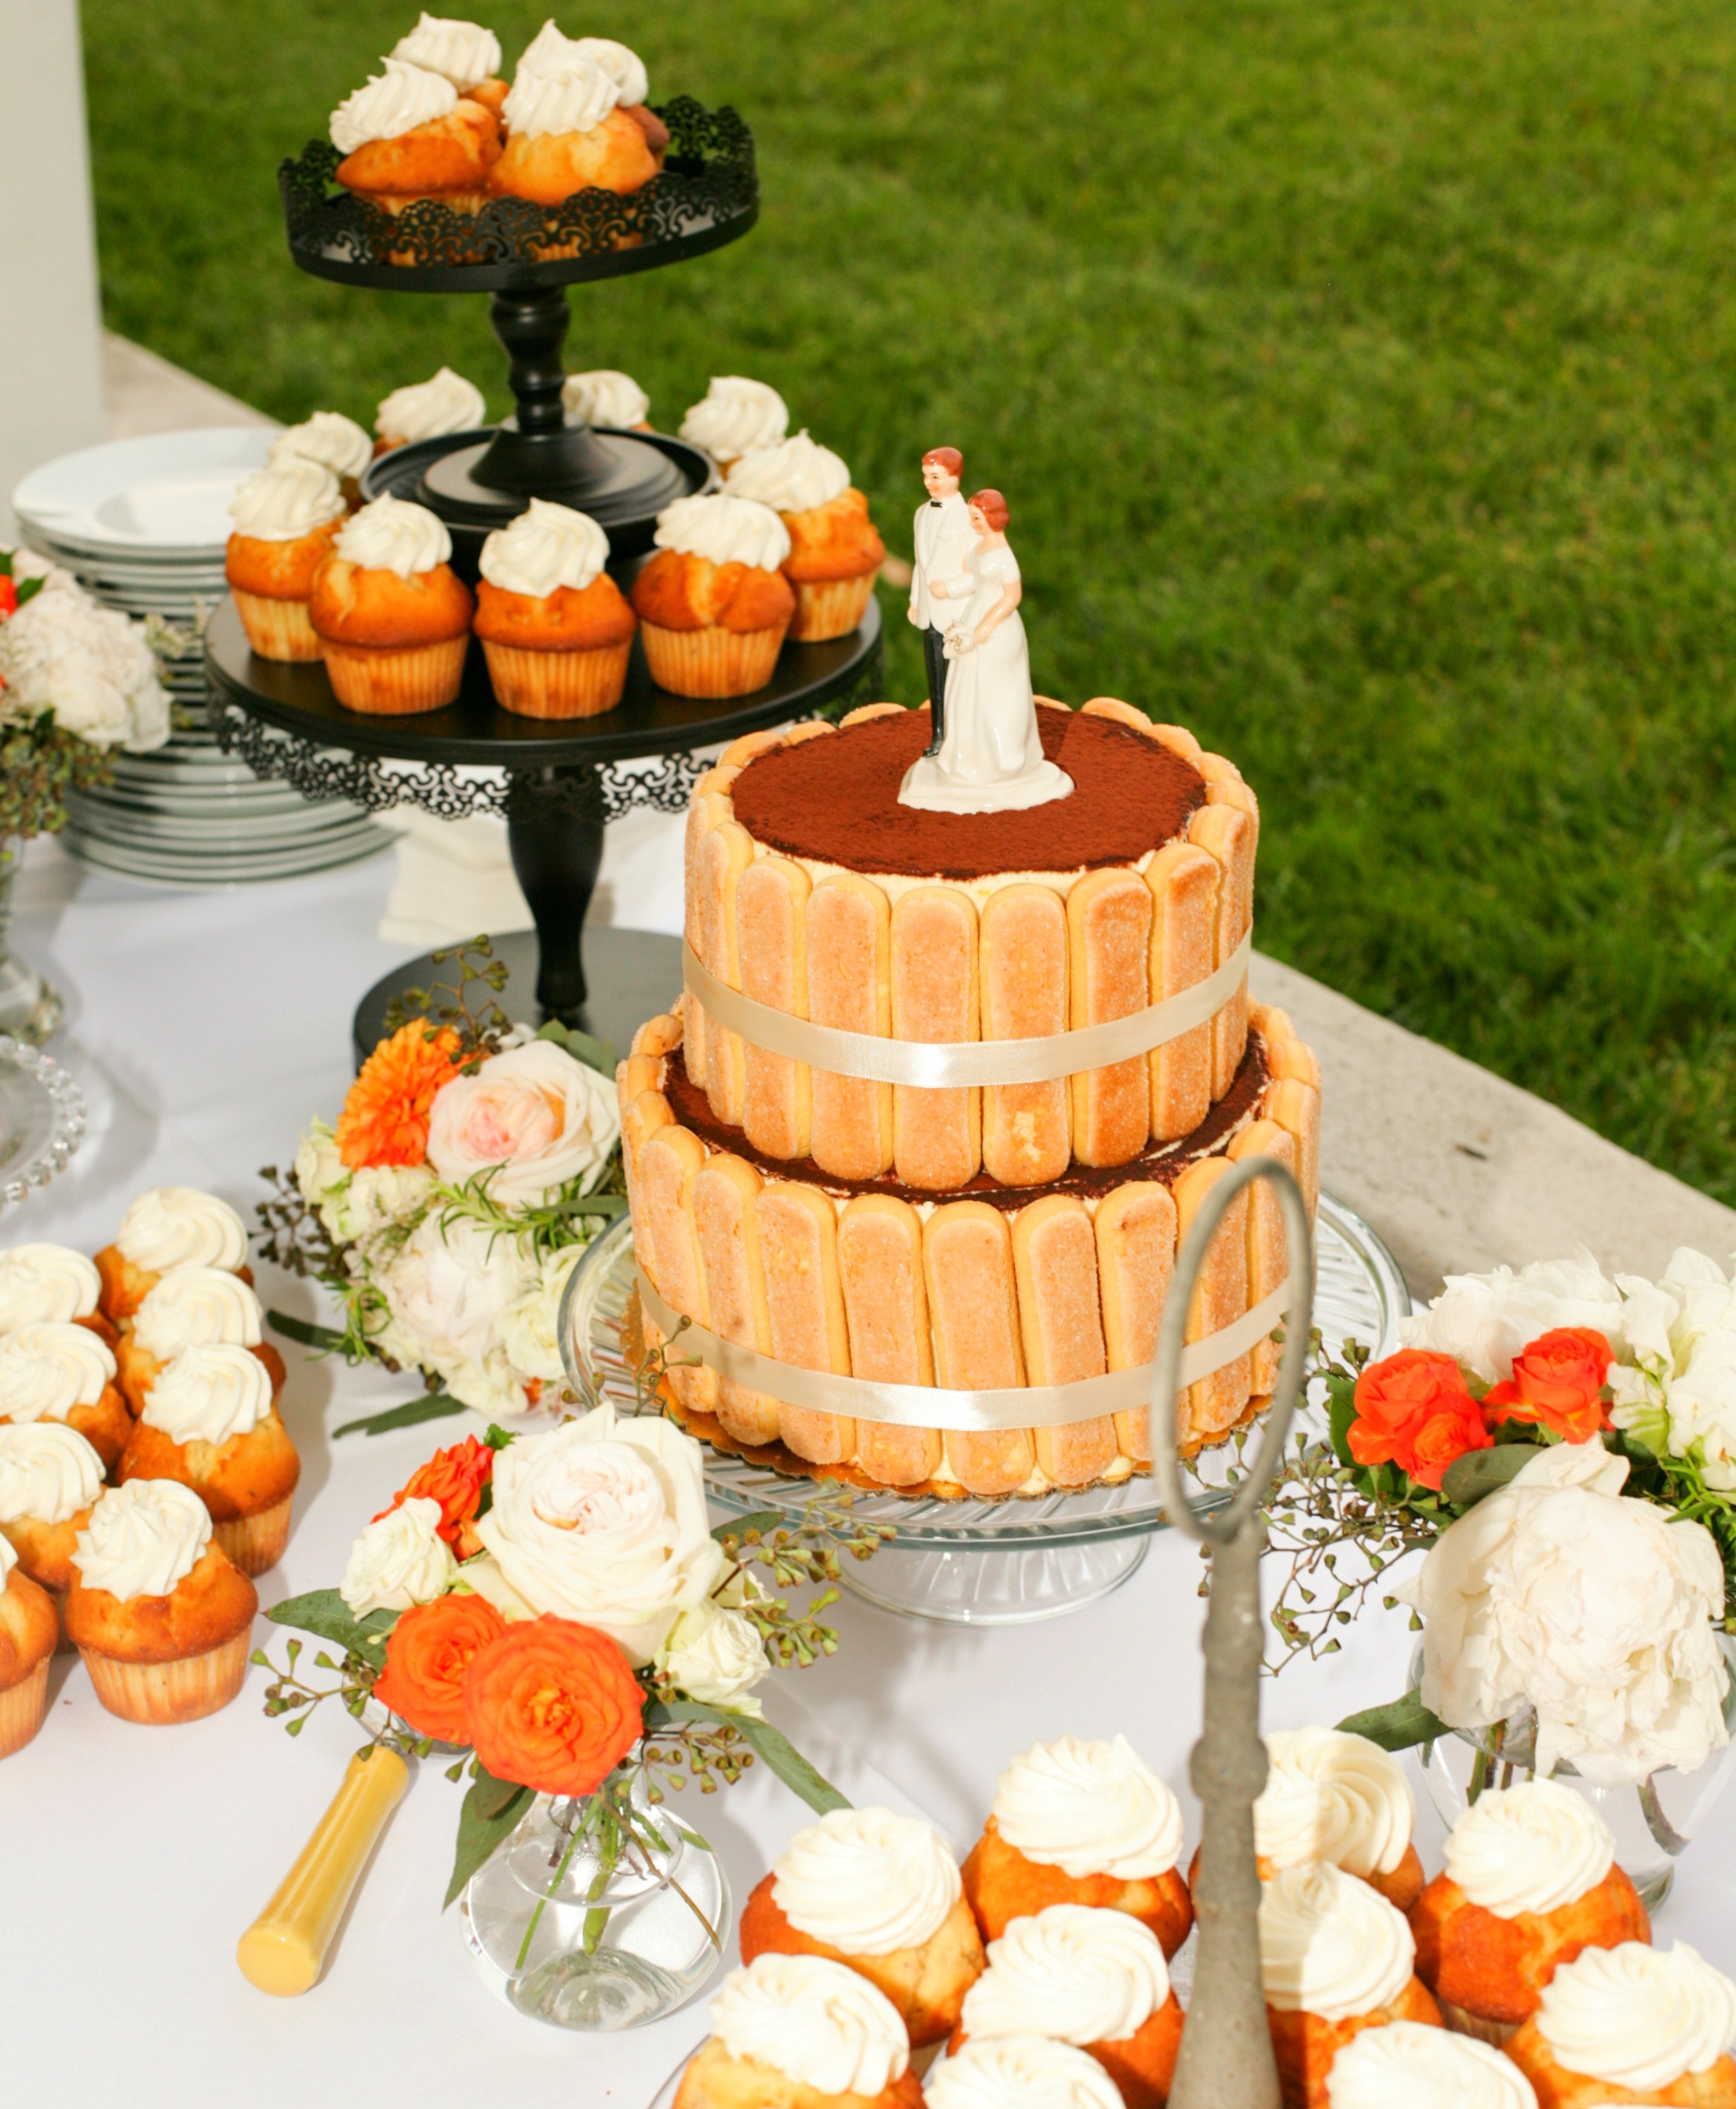 vinyard-wedding-cupcakes.jpg